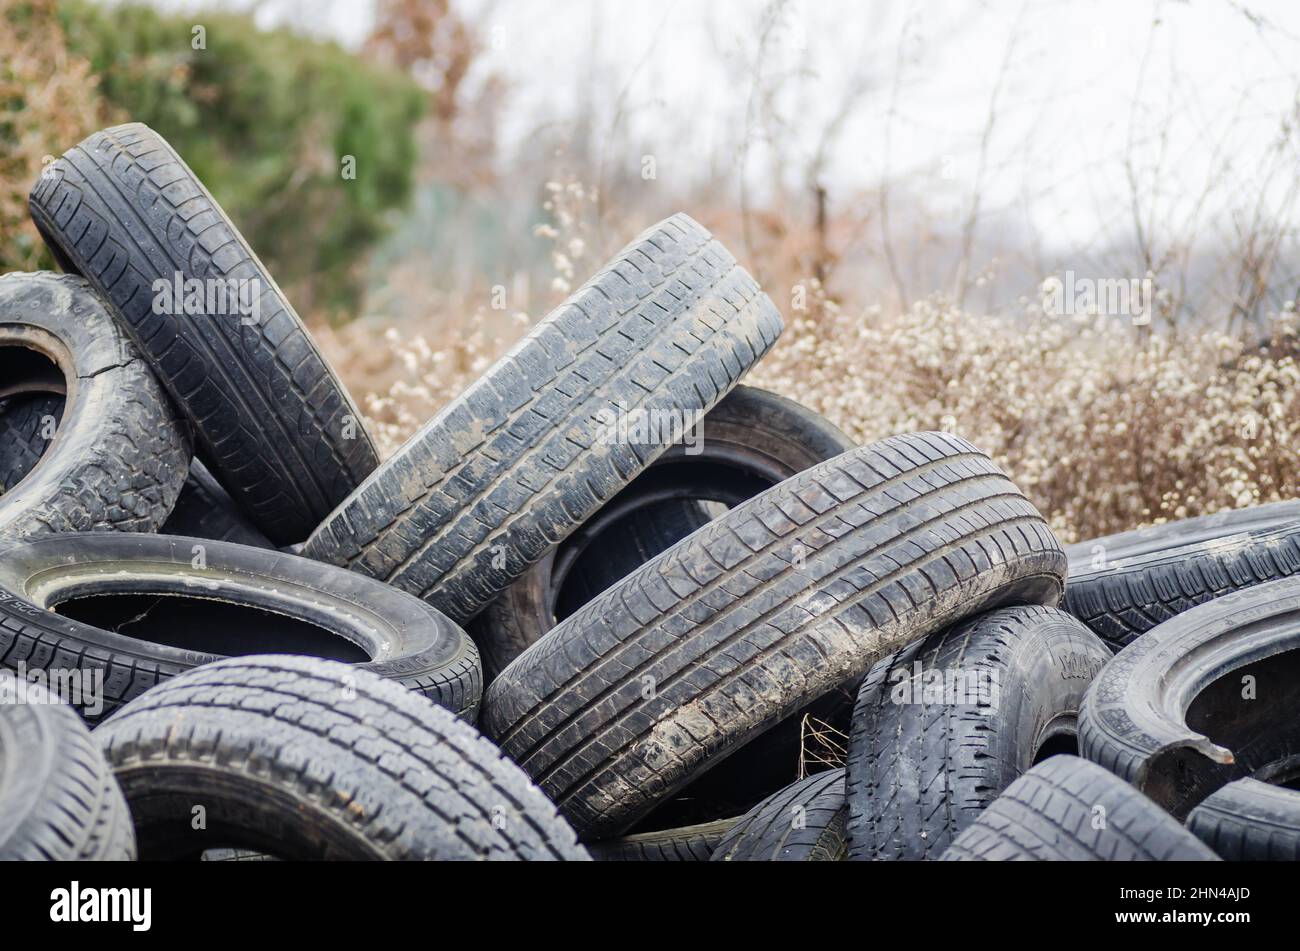 Ein Haufen beschädigter, alter, weggeworfener Autoreifen zum Recycling. Stockfoto